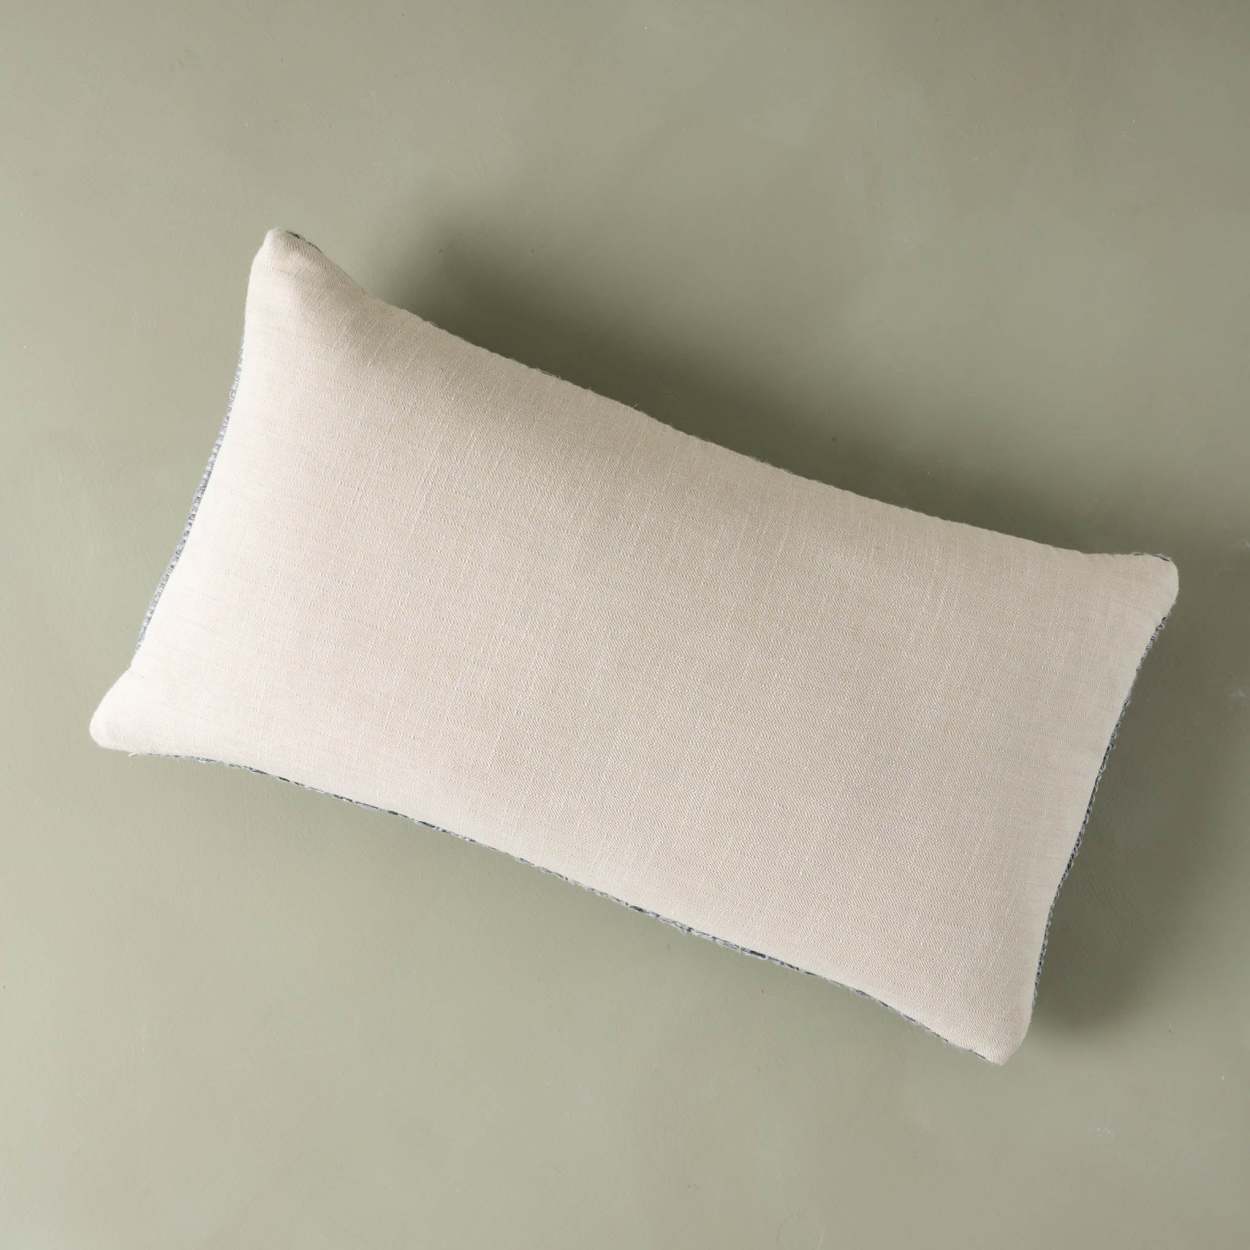 Tinsley Organic Linen Lumbar Pillow – YaYa & Co.